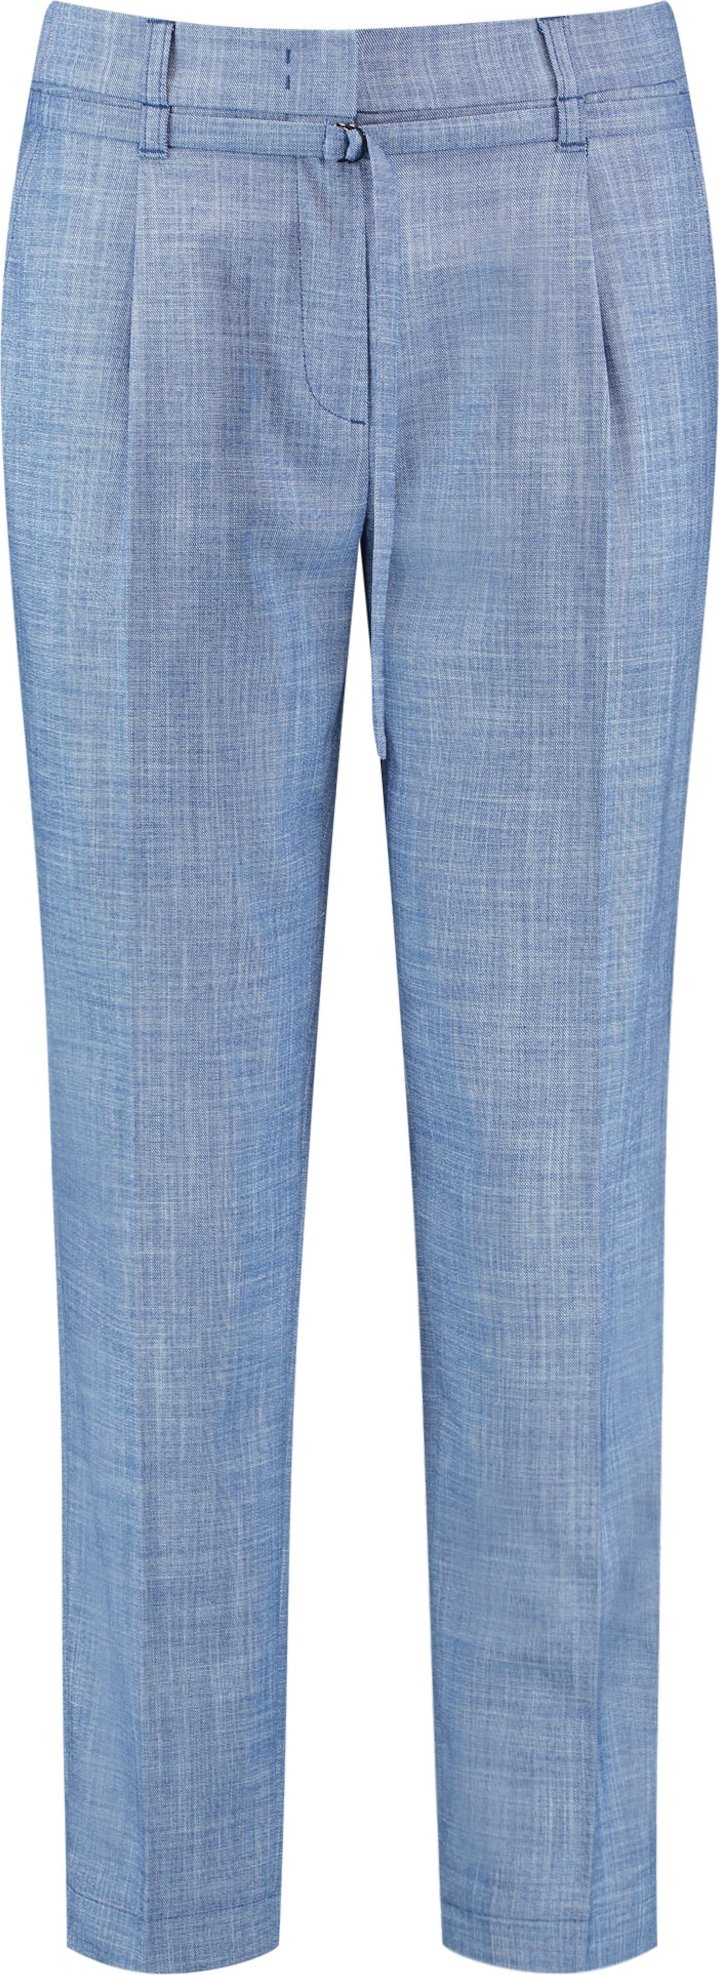 GERRY WEBER Kalhoty s puky modrá / světlemodrá